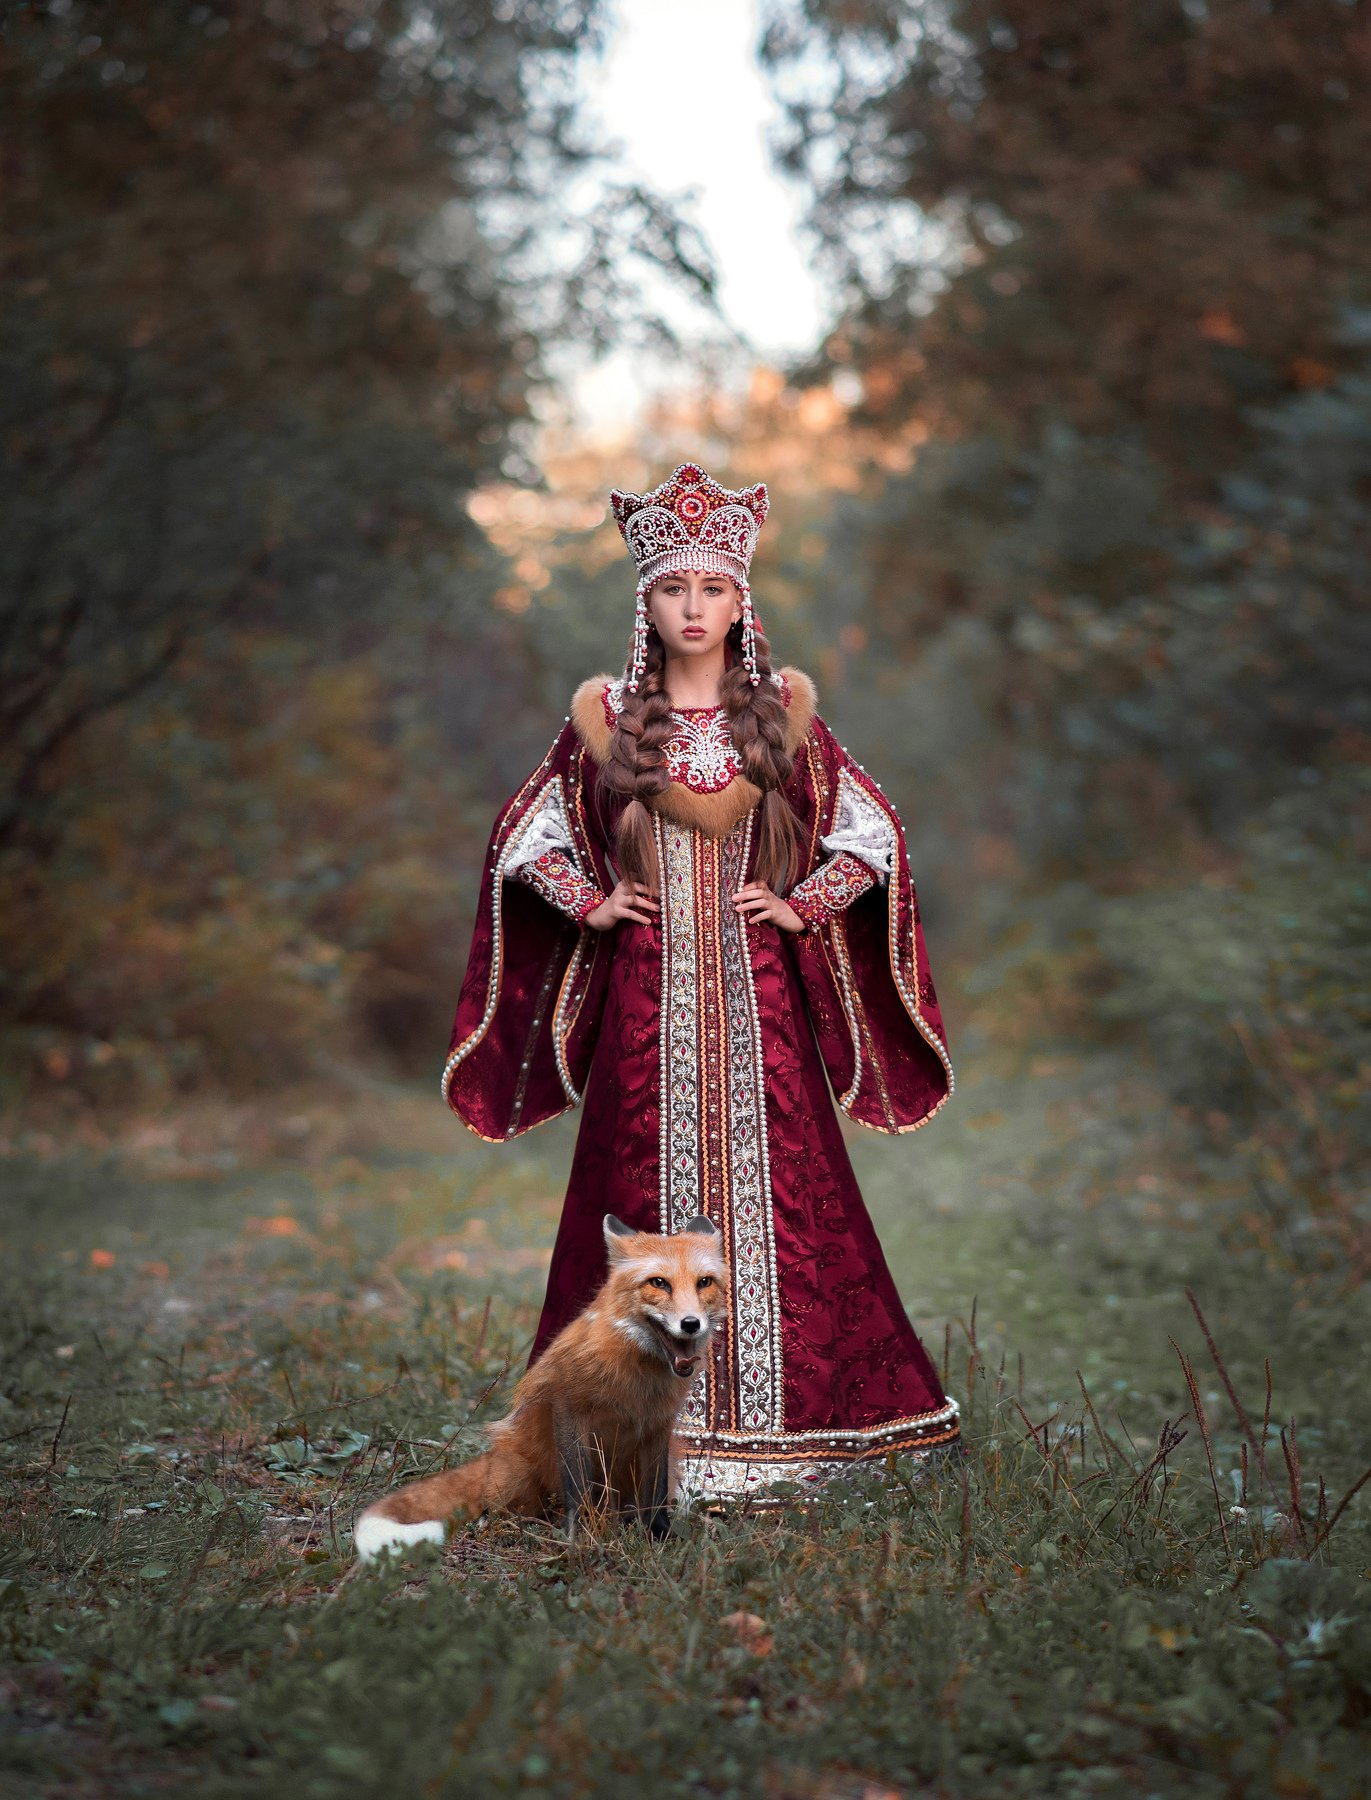 Царевна, лис, рыжий лис, природа, осень, красный, костюм, русское платье, традиции, русский мир, Софья Ознобихина